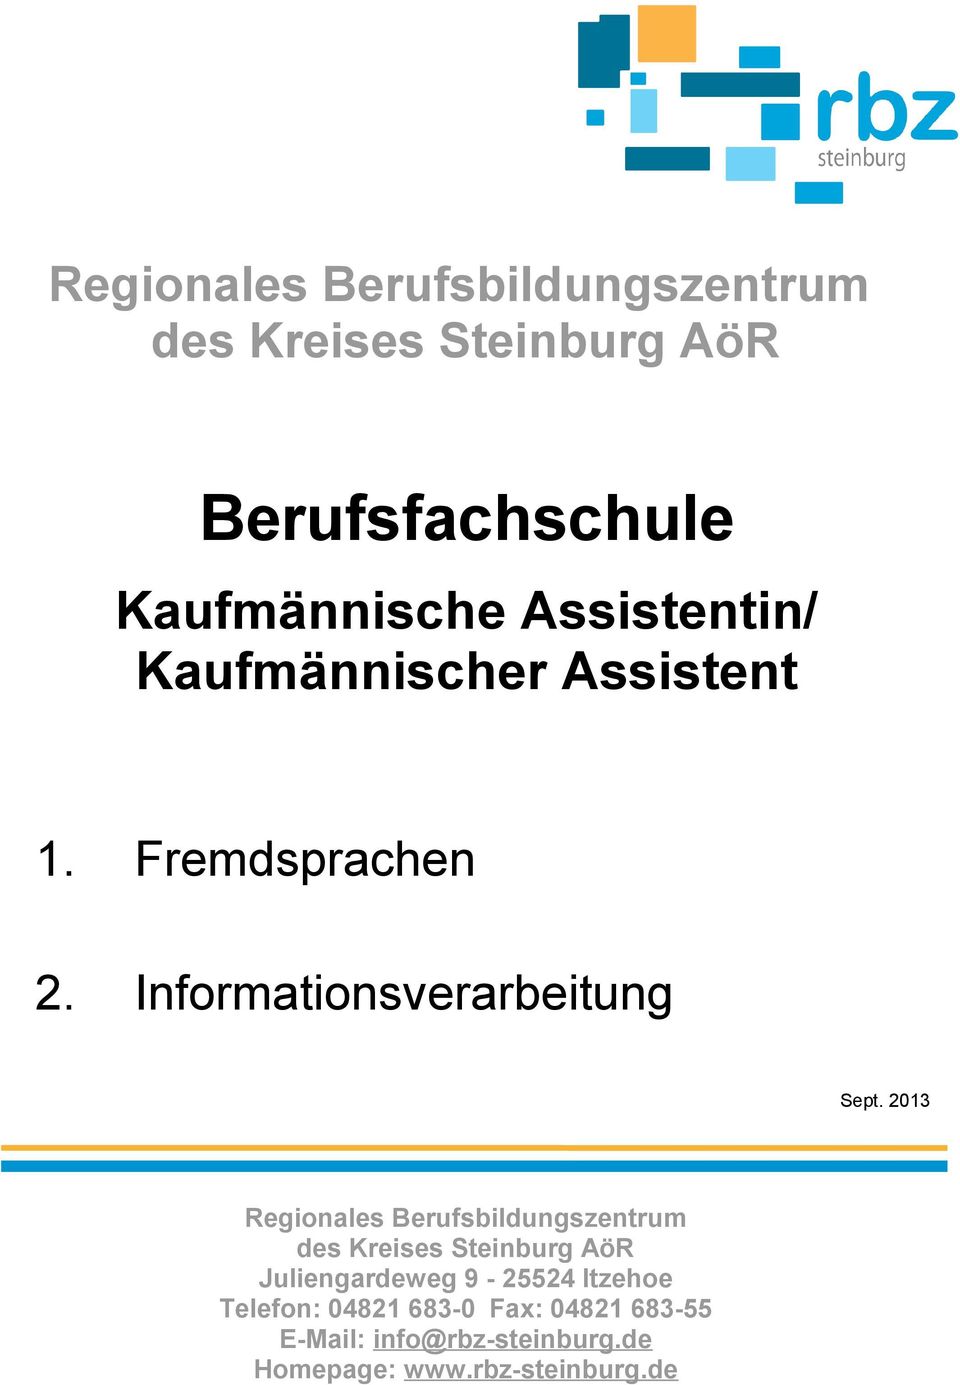 20 Regionales Berufsbildungszentrum des Kreises Steinburg AöR Juliengardeweg 9-25524